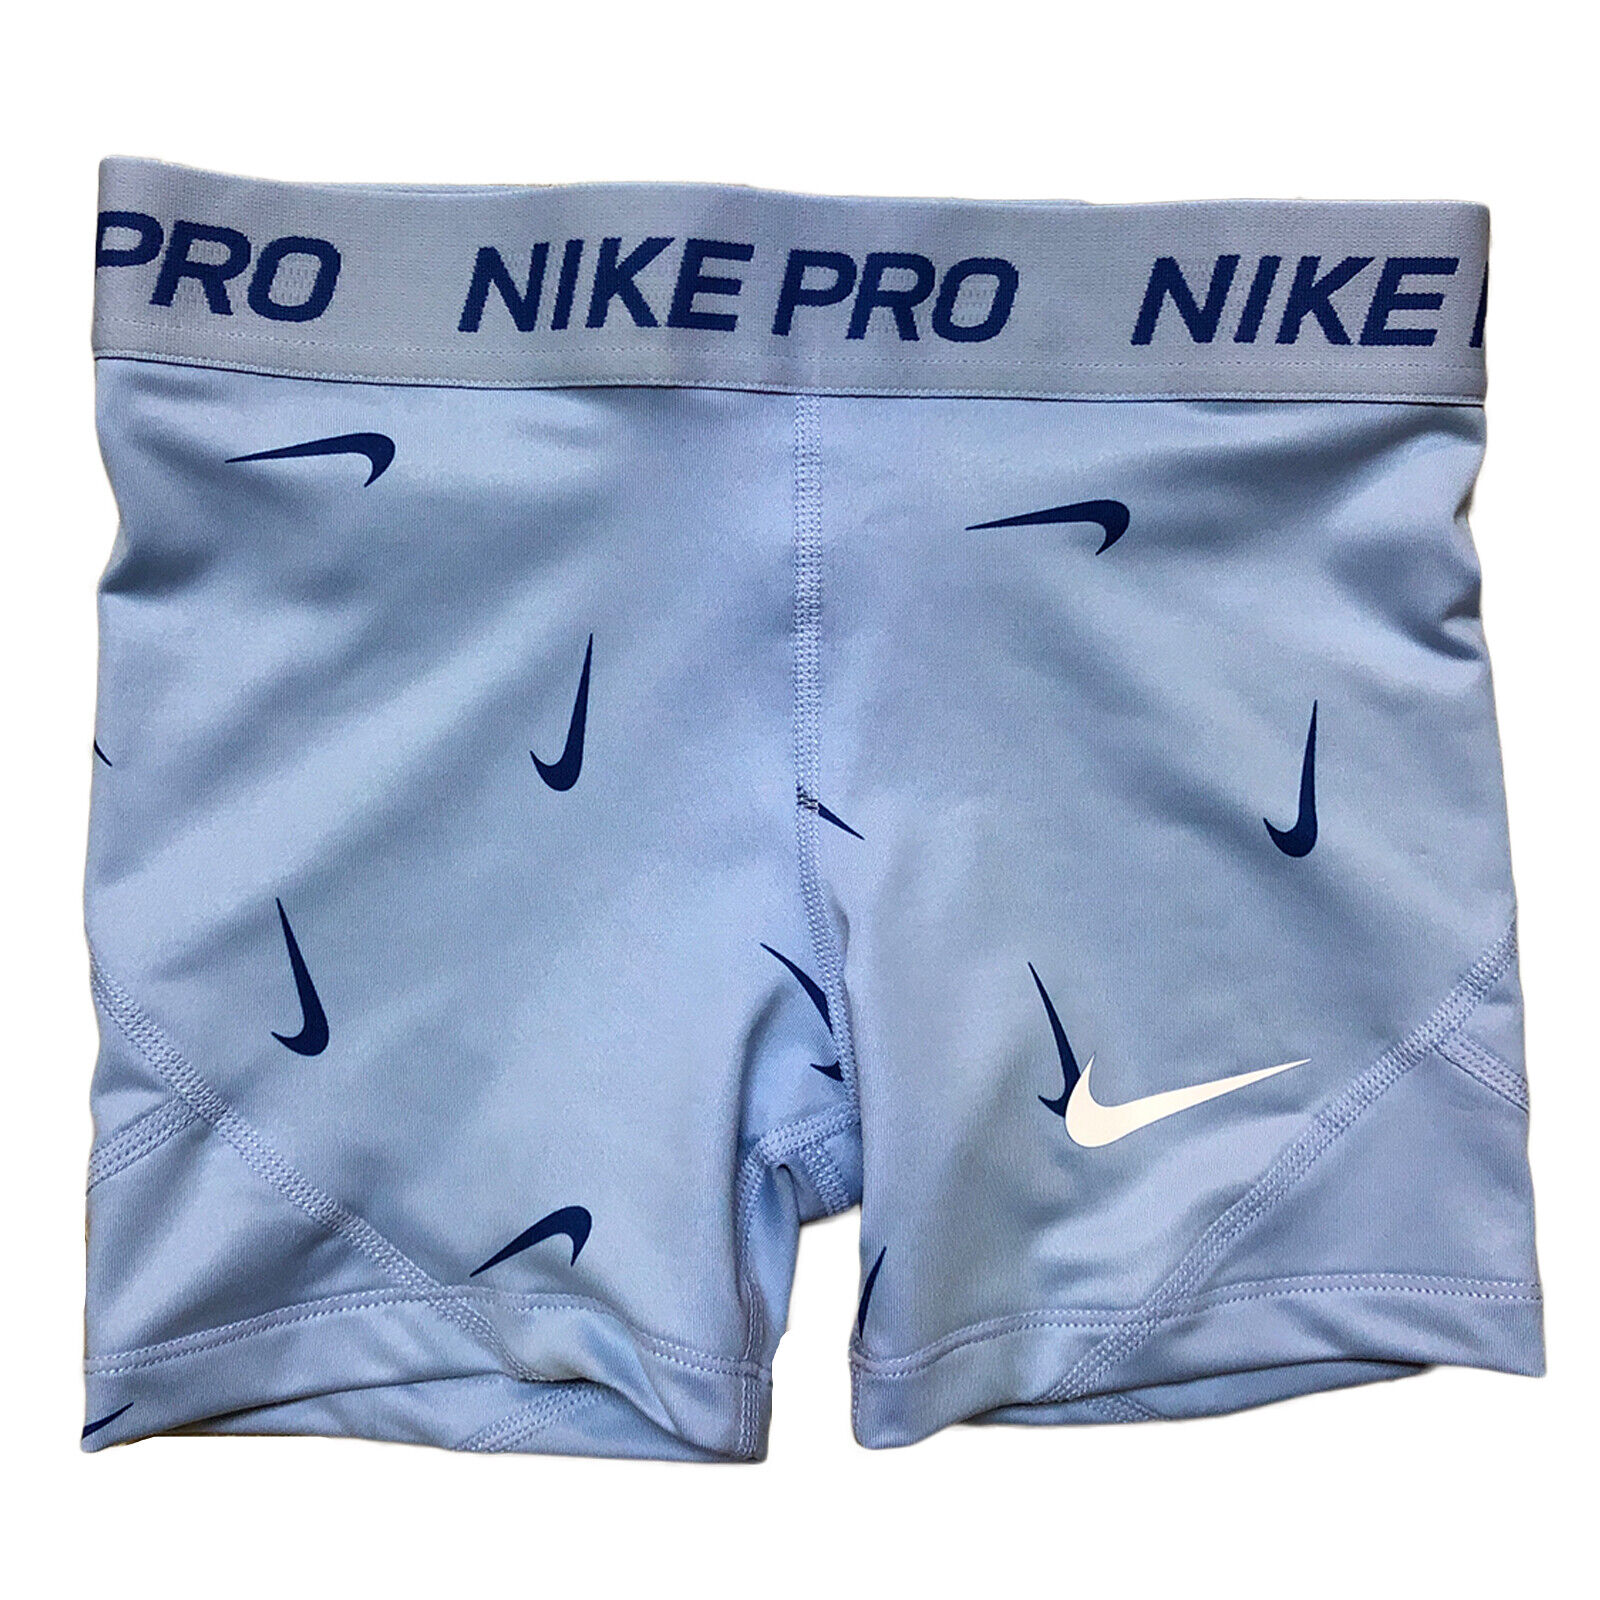 nike pro shorts size